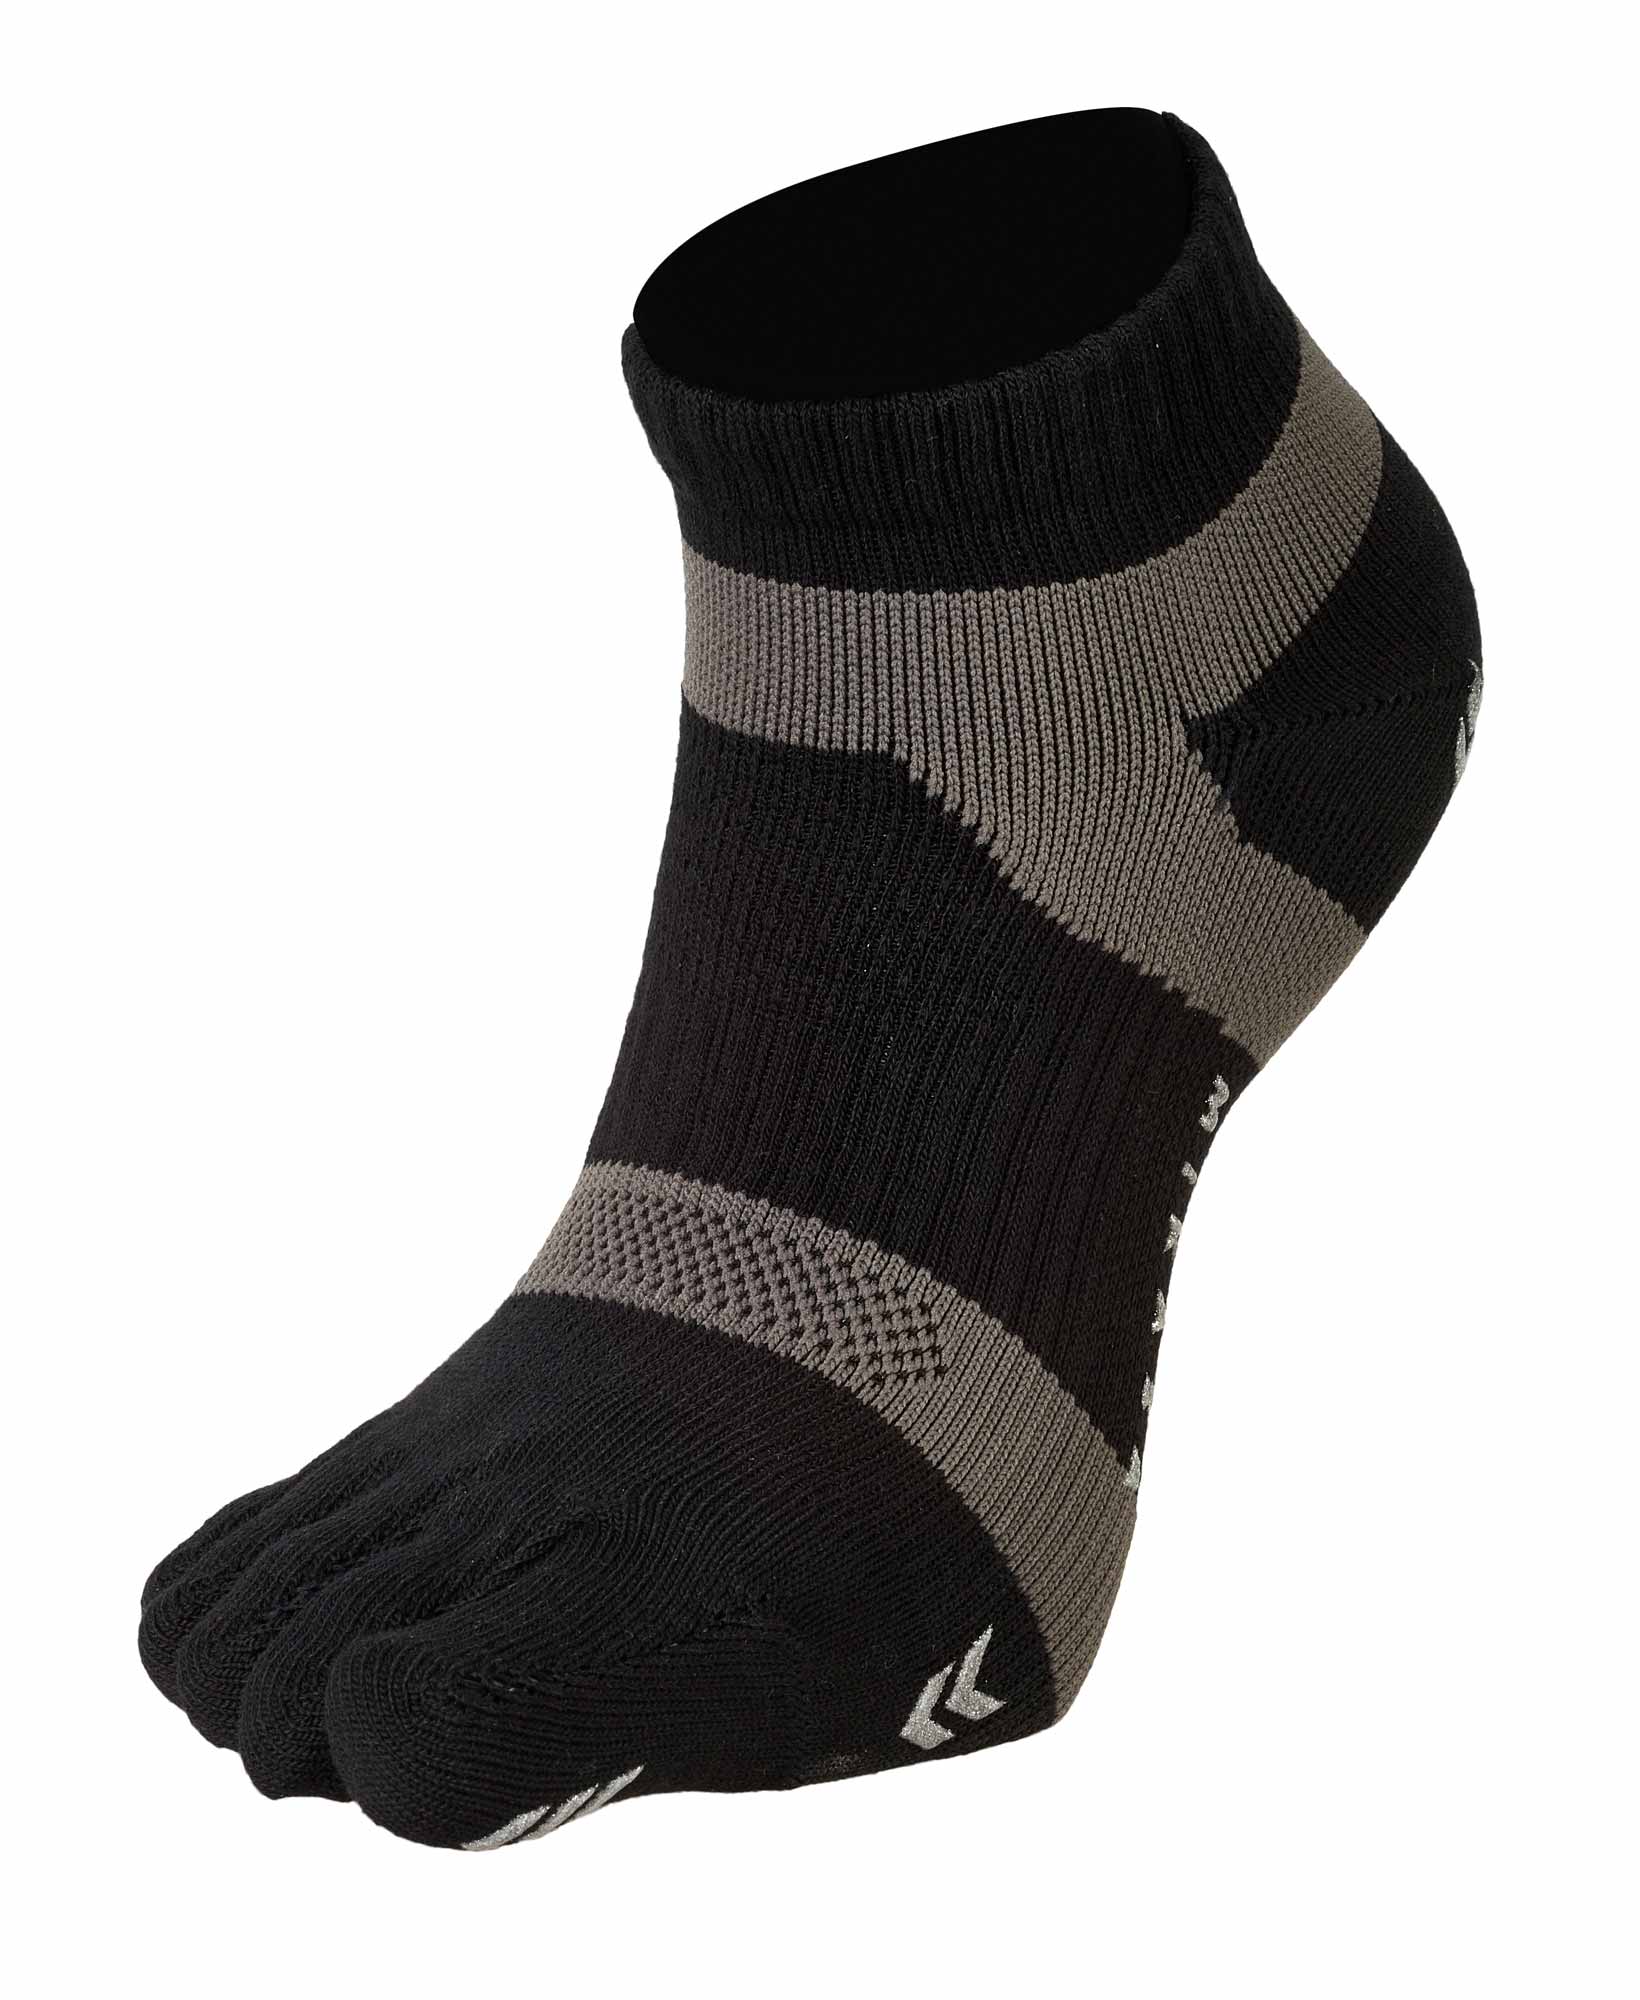 Mikasa Tough Runner Zehensocken toe socks, 394061